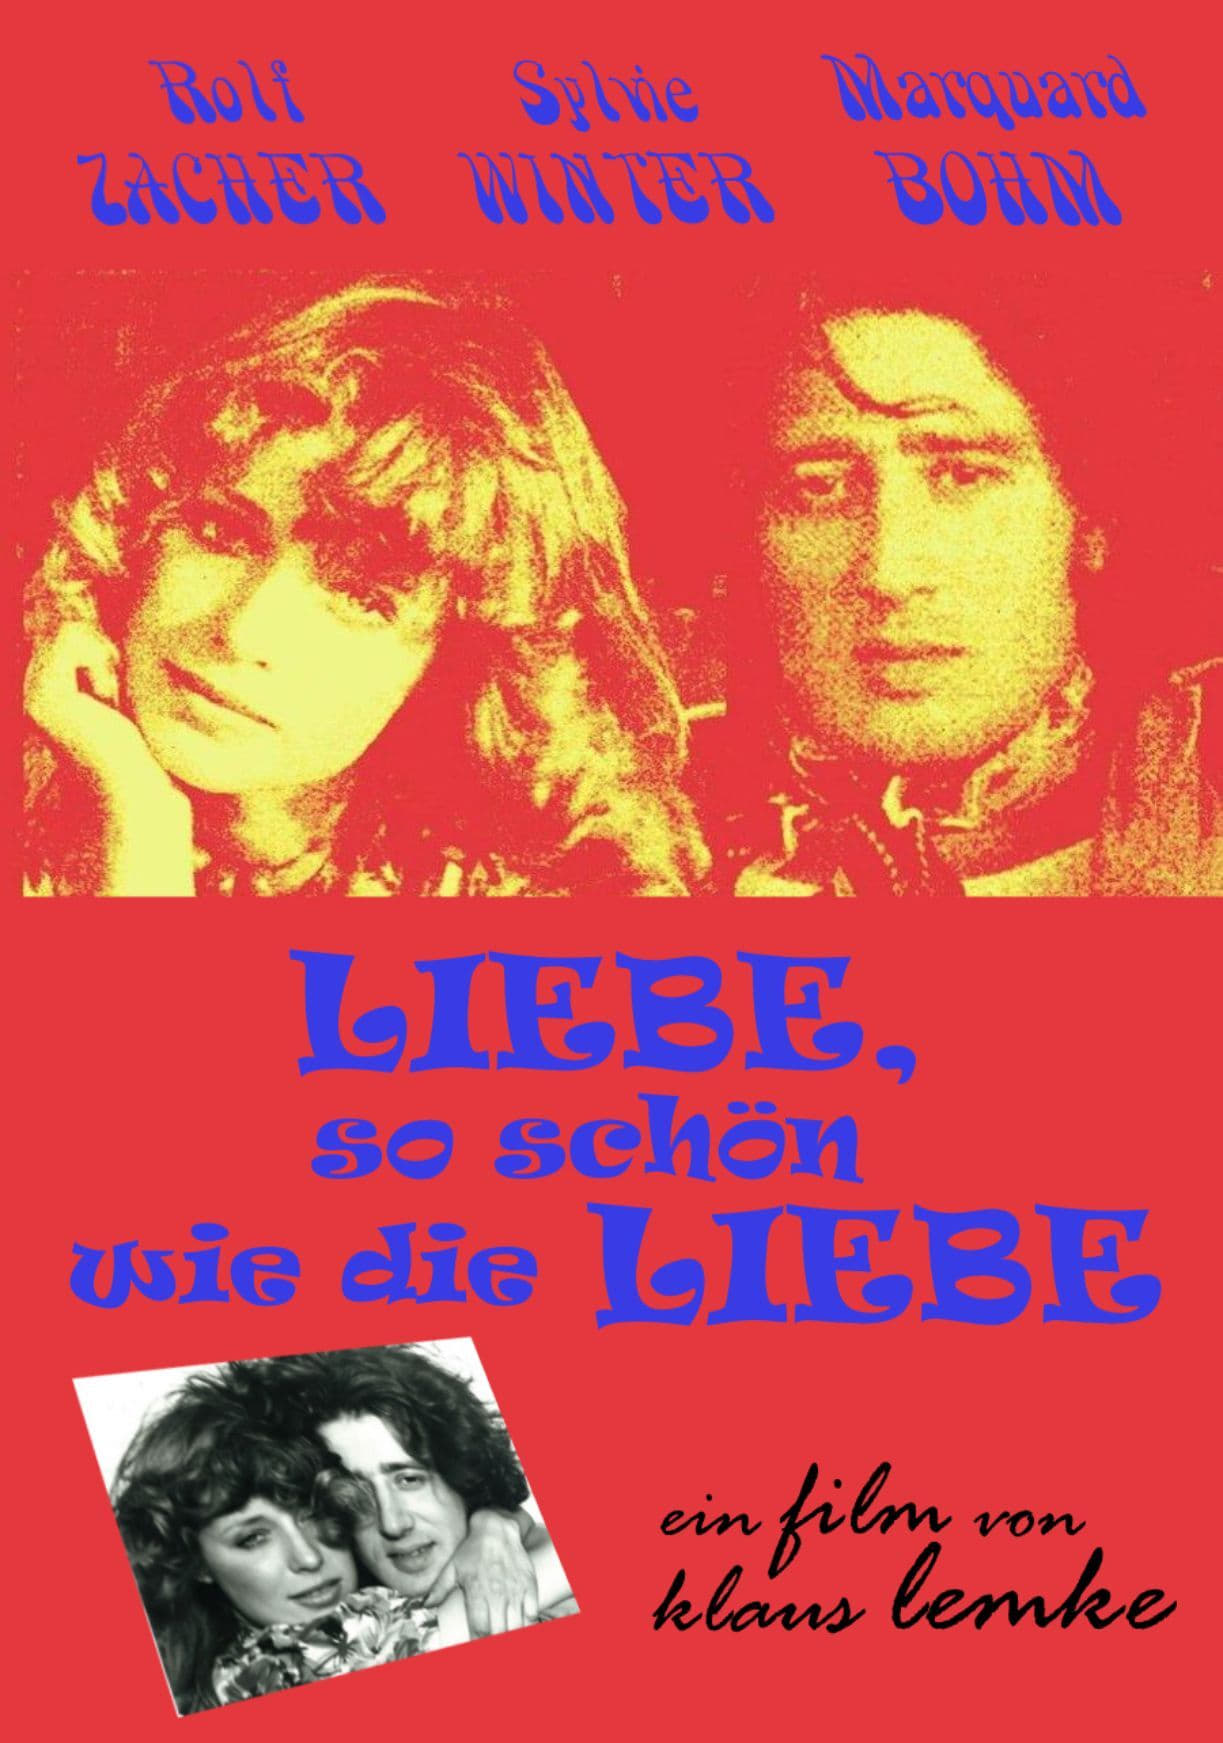 Liebe, so schön wie Liebe (1972)